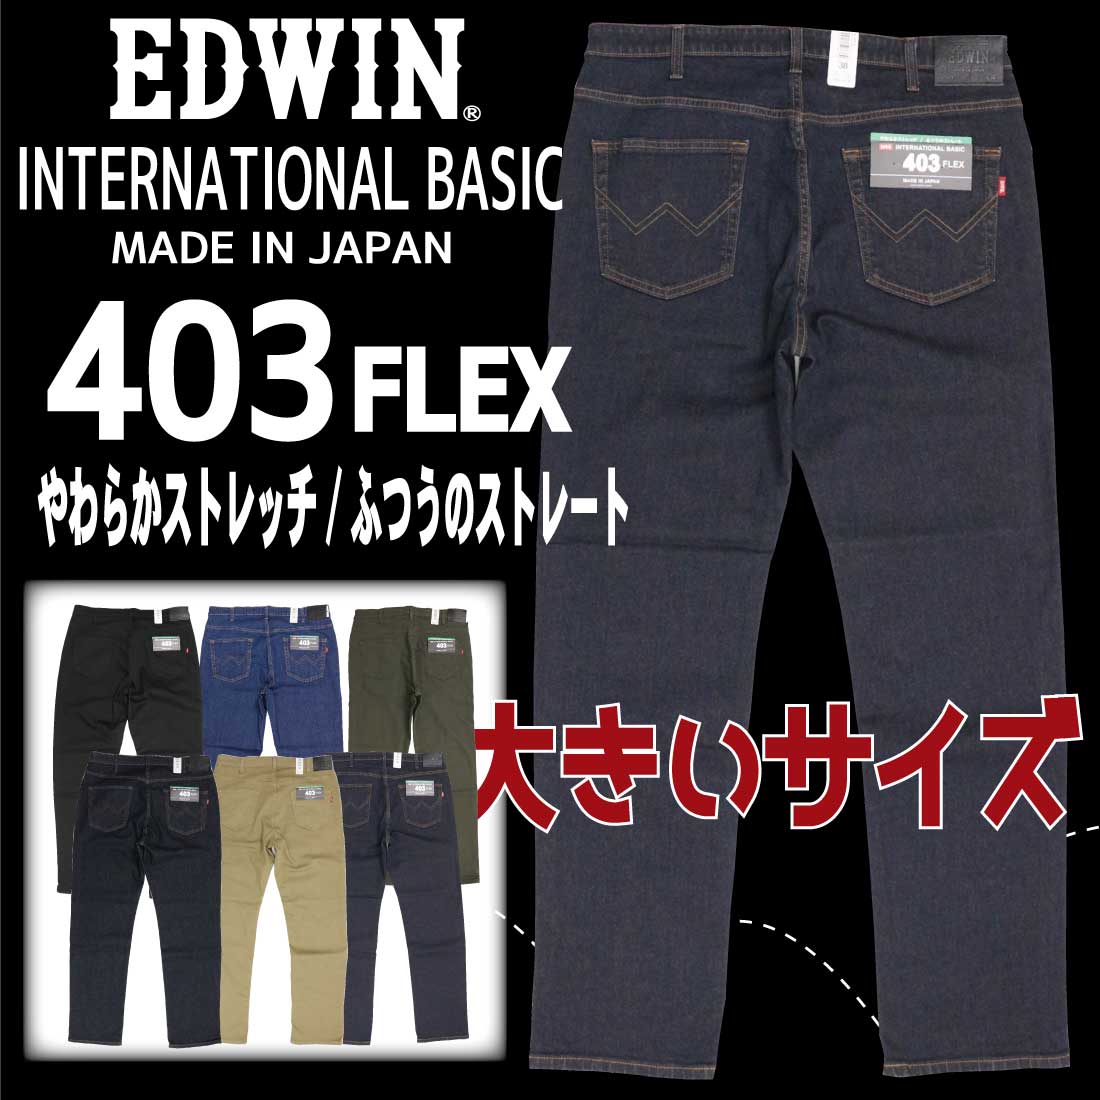 大きいサイズ EDWIN エドウイン ジーンズ 403FLEX ストレート E403F デニム ストレッチ インターナショナルベーシック 日本製 メンズ  ボトムス 00 14 33 75 92 :ed-king-e403f:jeans藍や - 通販 - Yahoo!ショッピング